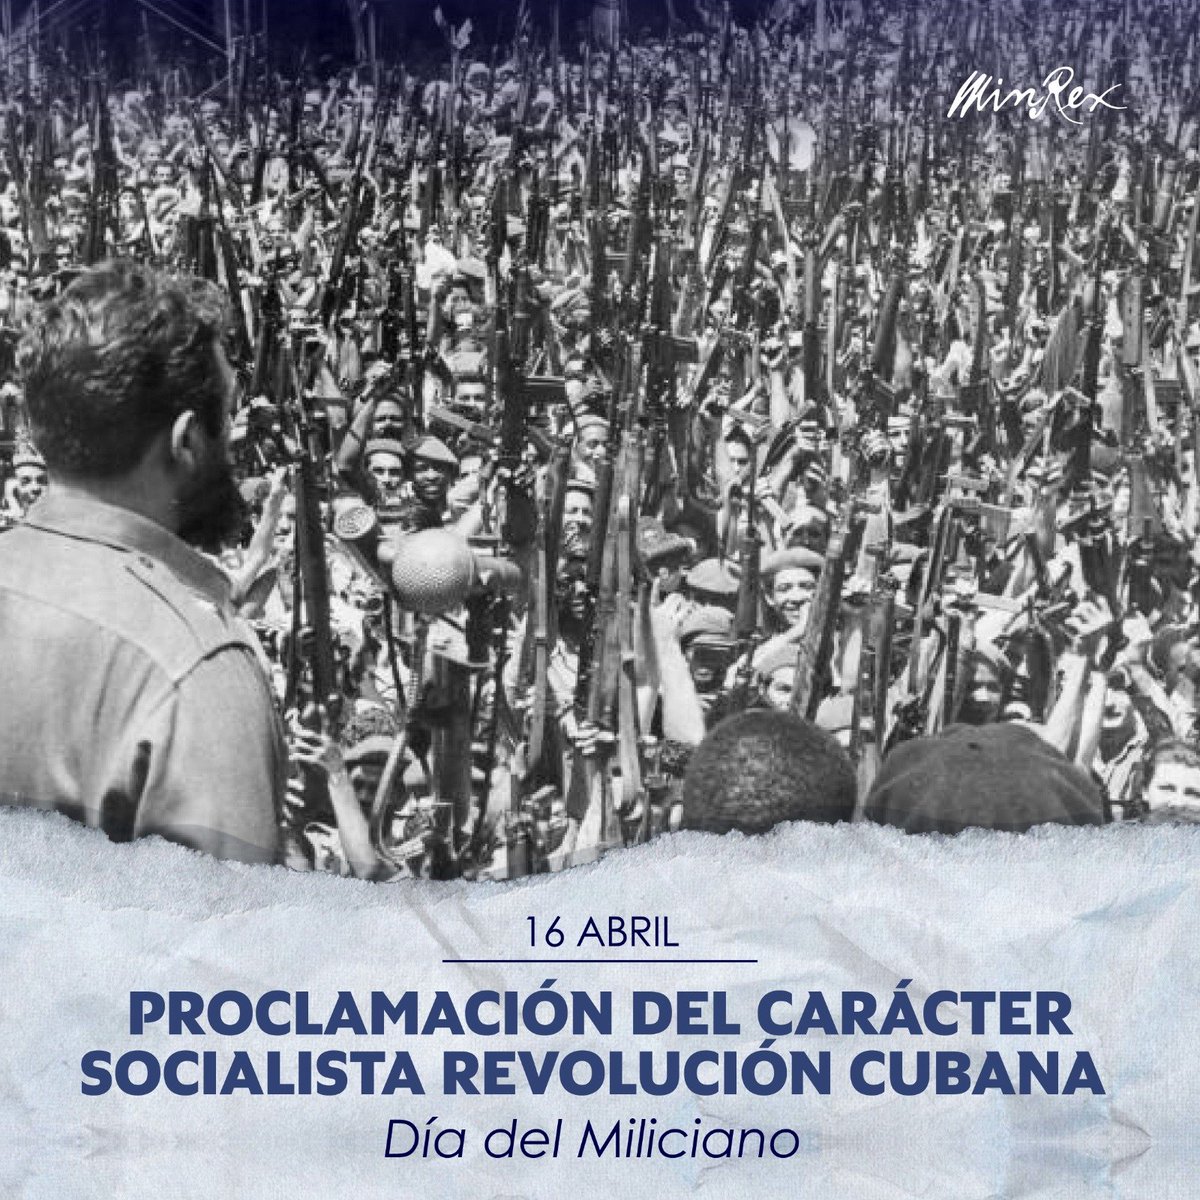 Hoy celebramos 63 años de la histórica proclama del carácter socialista de la Revolución Cubana🇨🇺. Recordamos con firmeza el compromiso del pueblo cubano en defender nuestras conquistas ante las constantes intromisiones del gobierno estadounidense. #GirónVictorioso